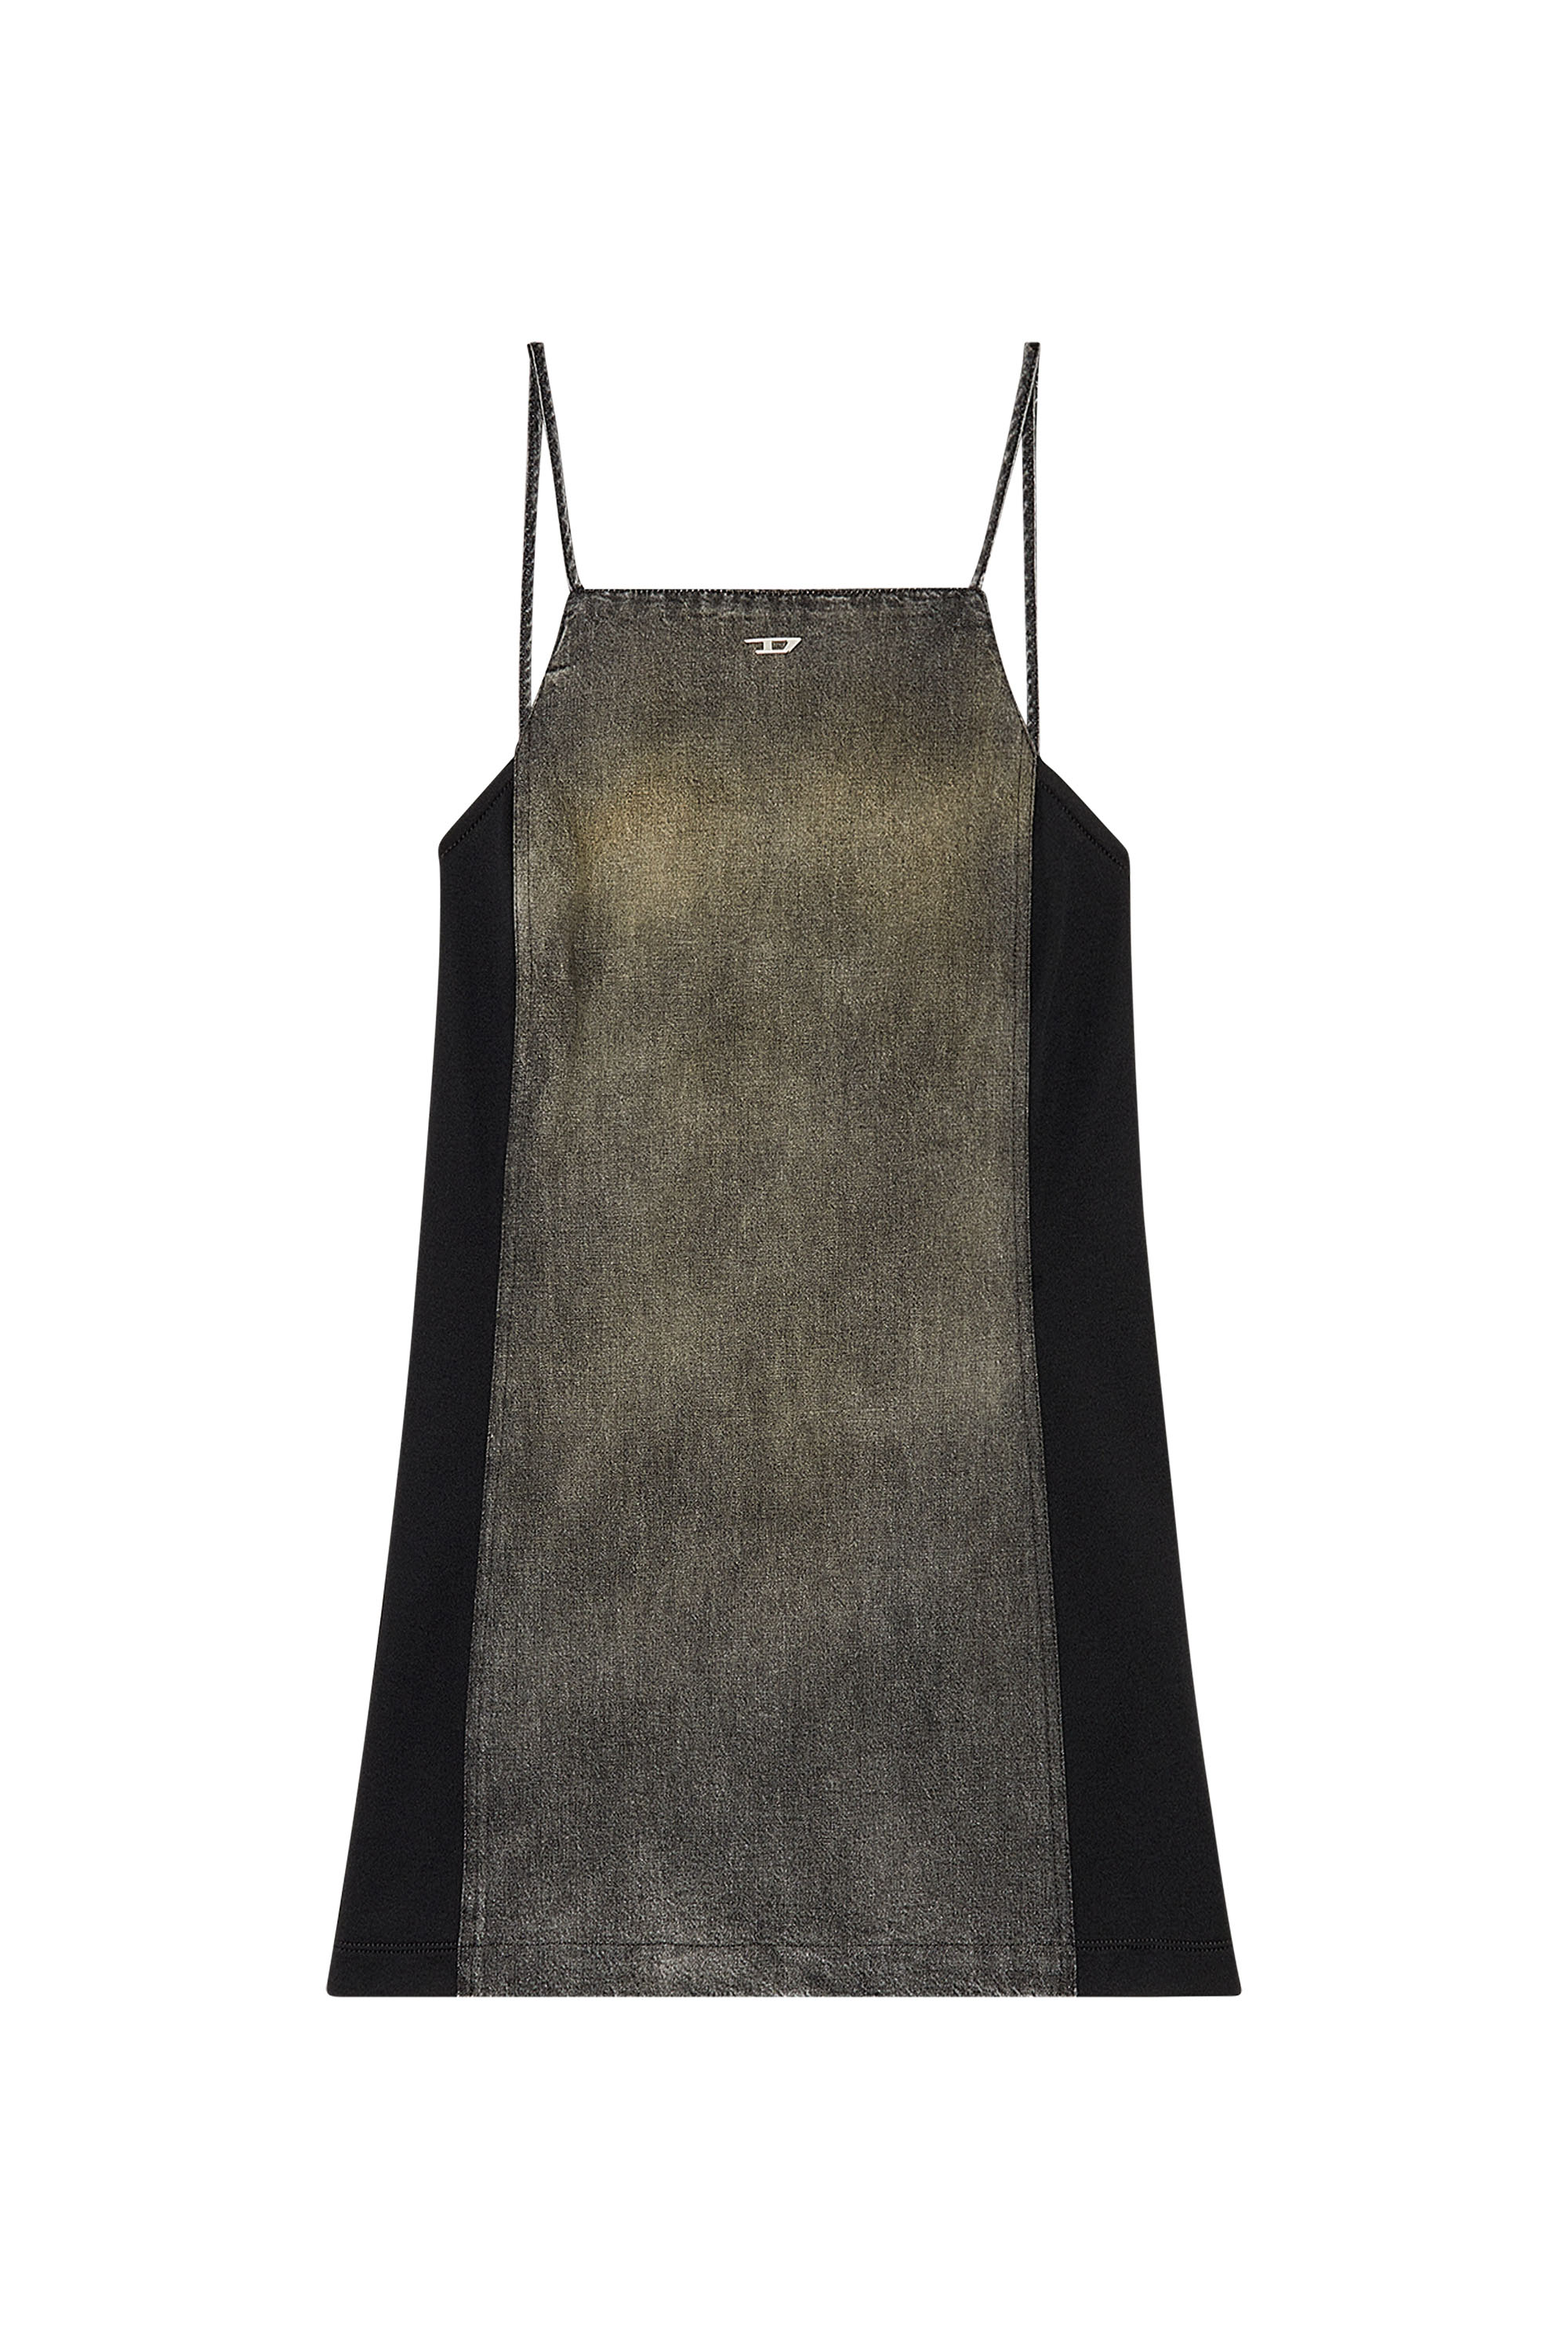 Diesel - DE-BETY-DRESS-S, Woman Denim dress in cotton and hemp in Black - Image 2